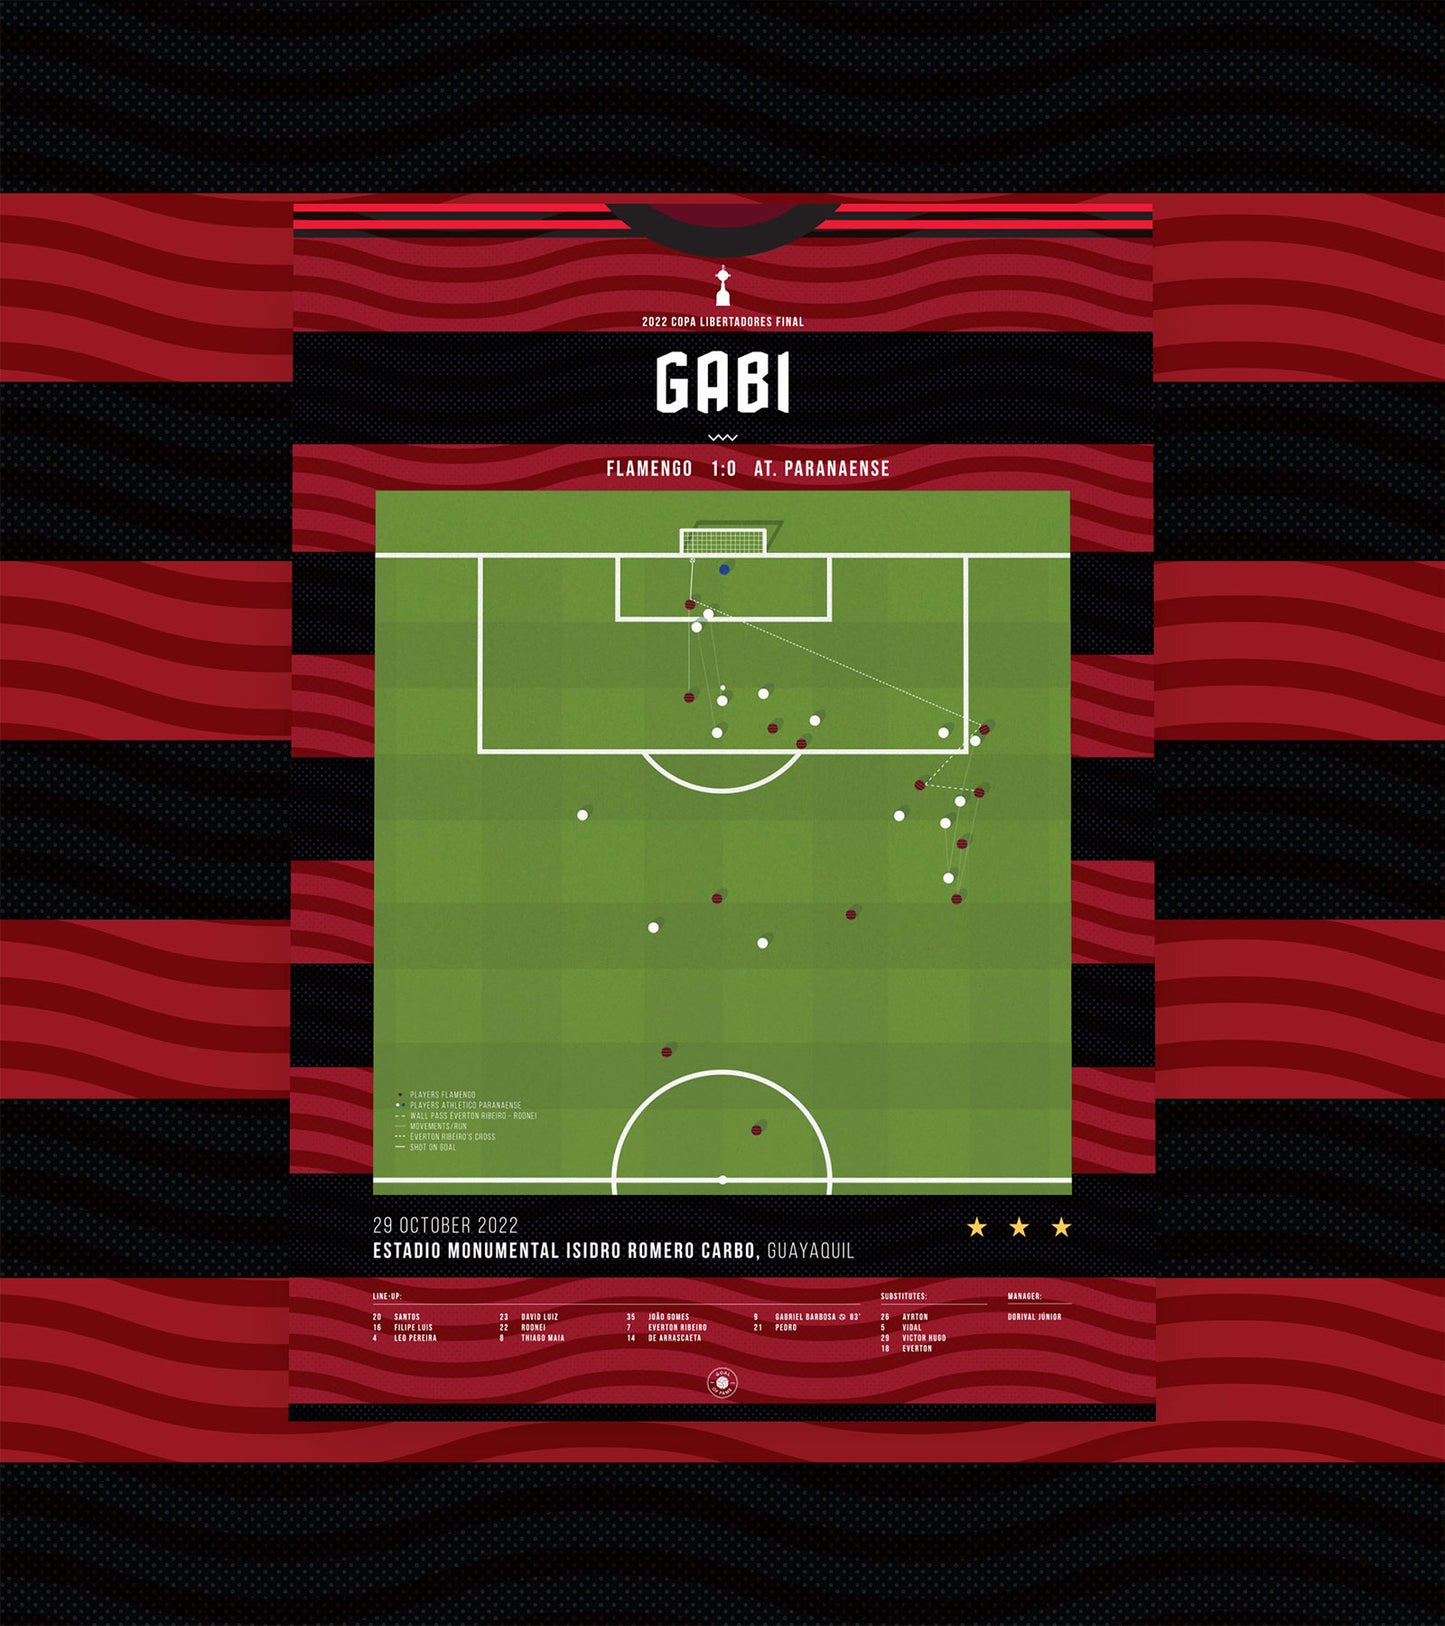 Gabi’s goal gave Flamengo their third Copa Libertadores